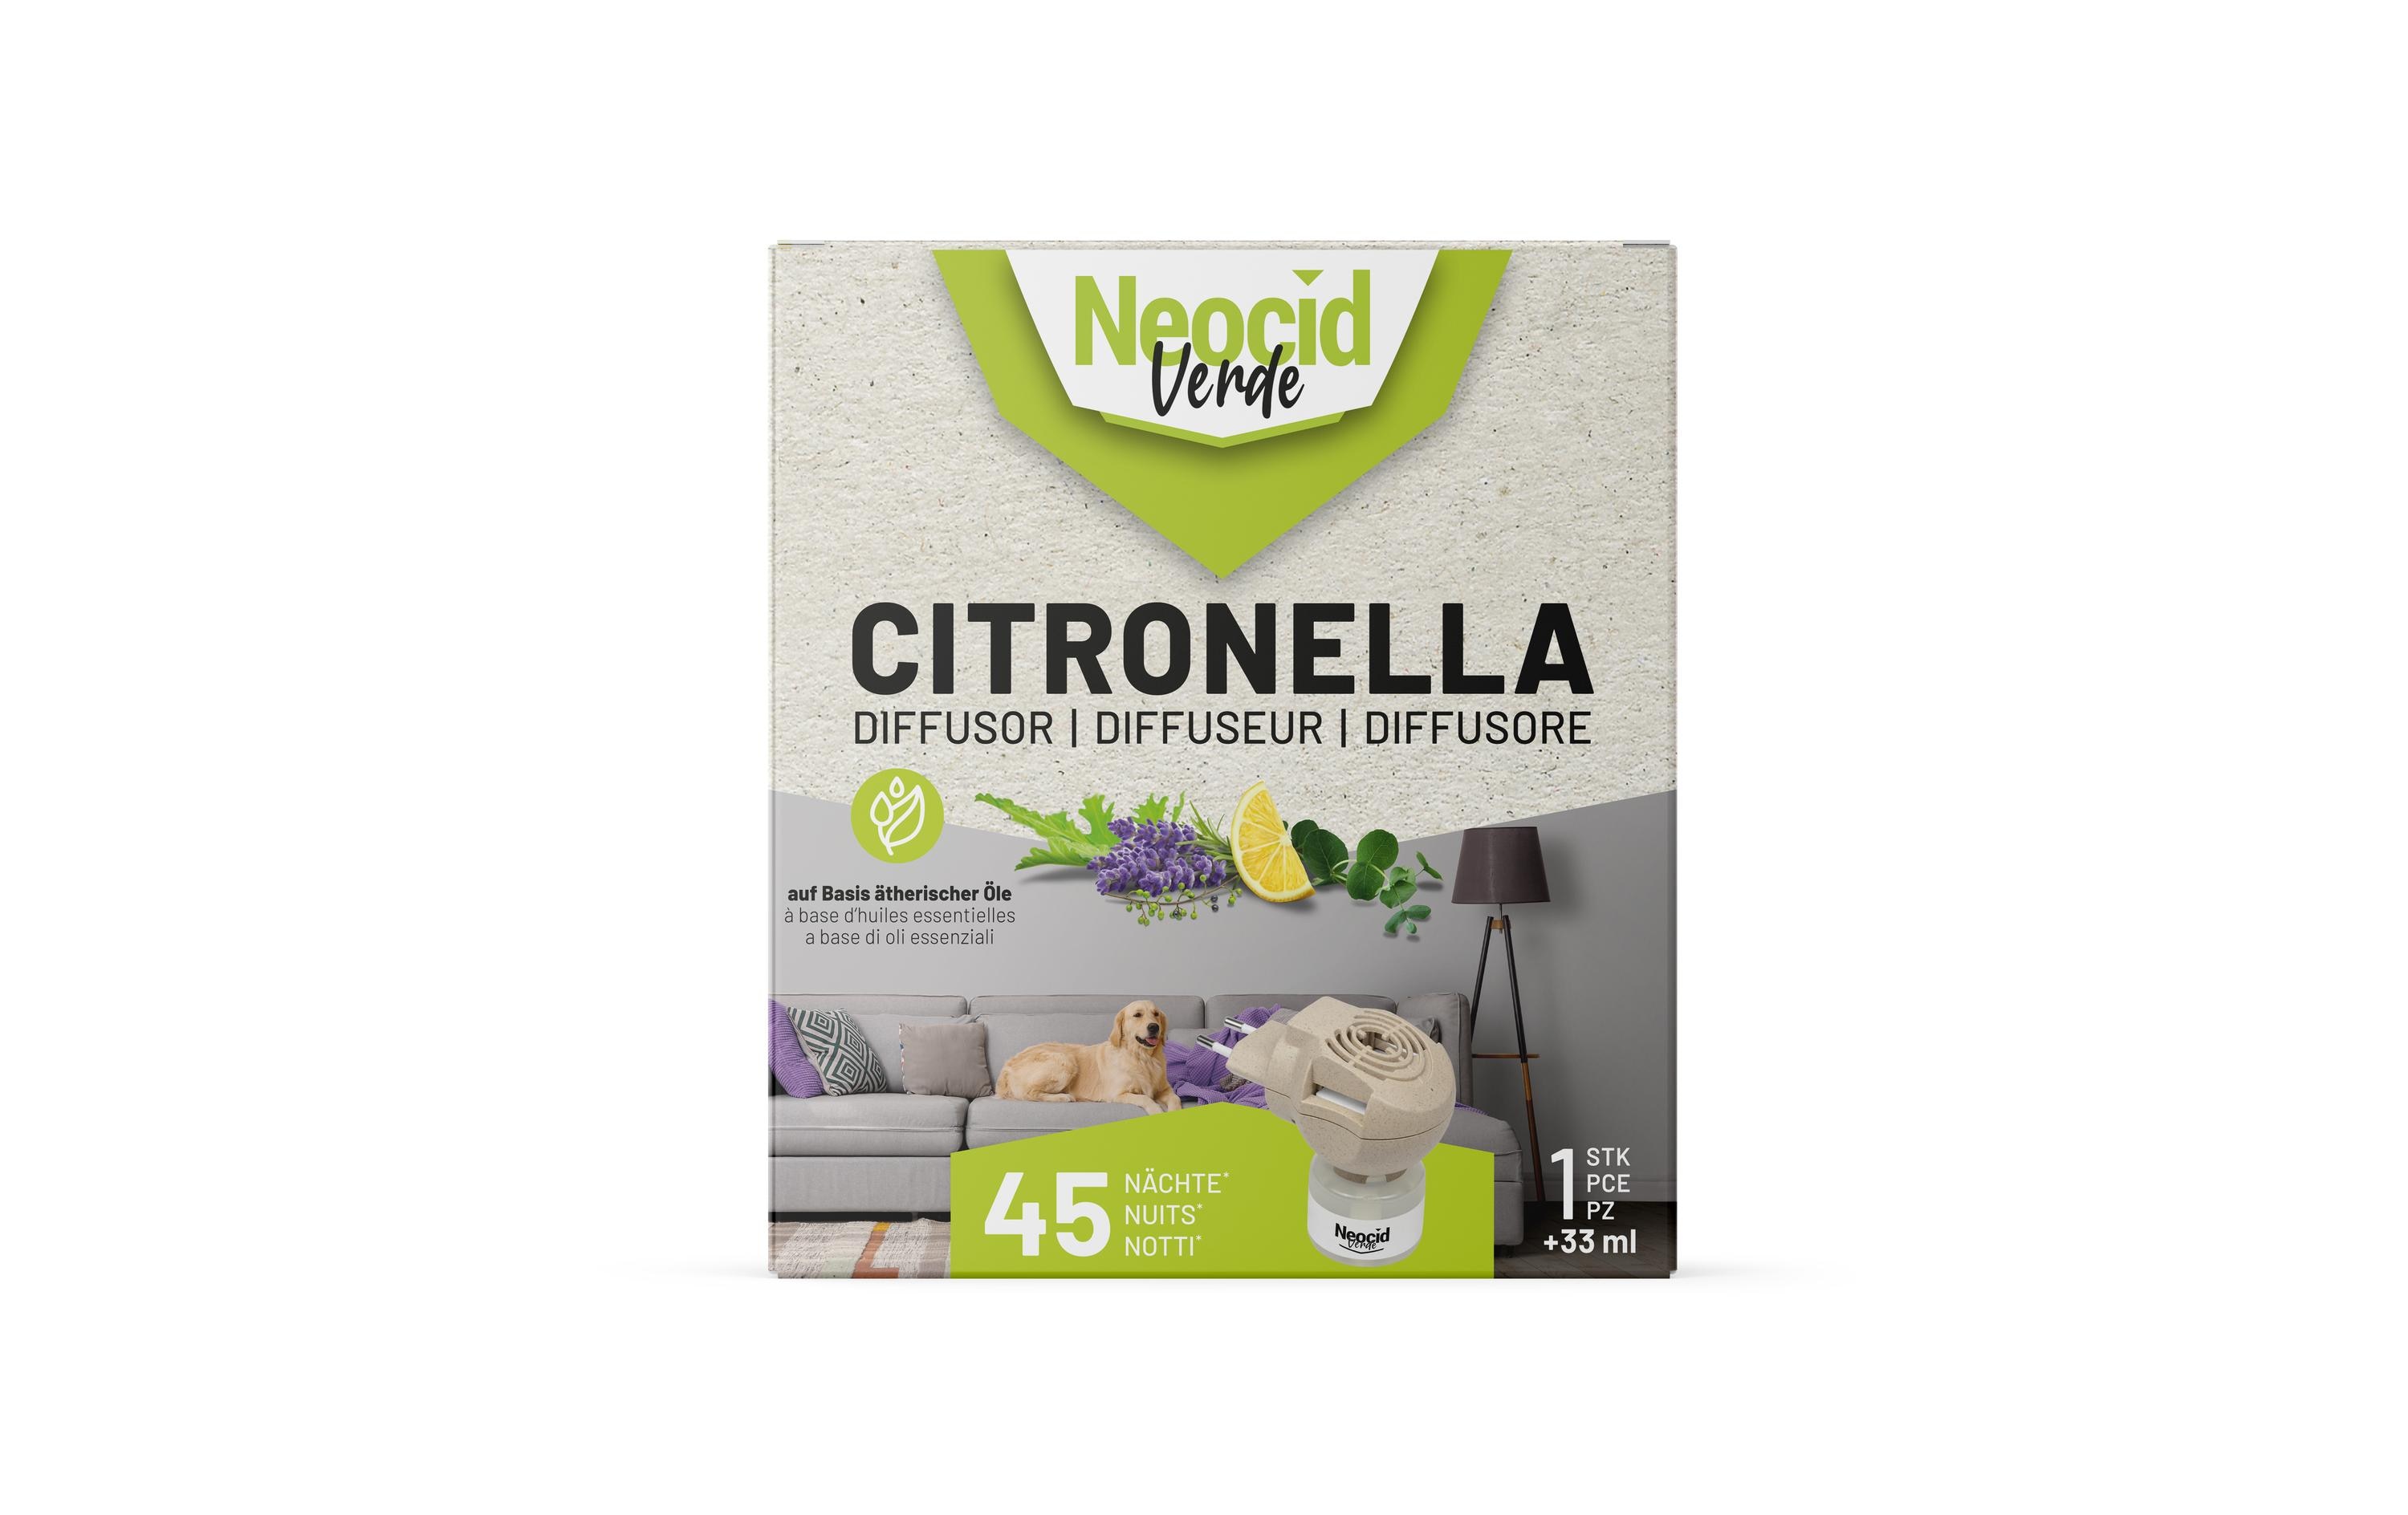 Neocid Expert Mückenstecker Verde Citronella Diffusor, 1 Stück